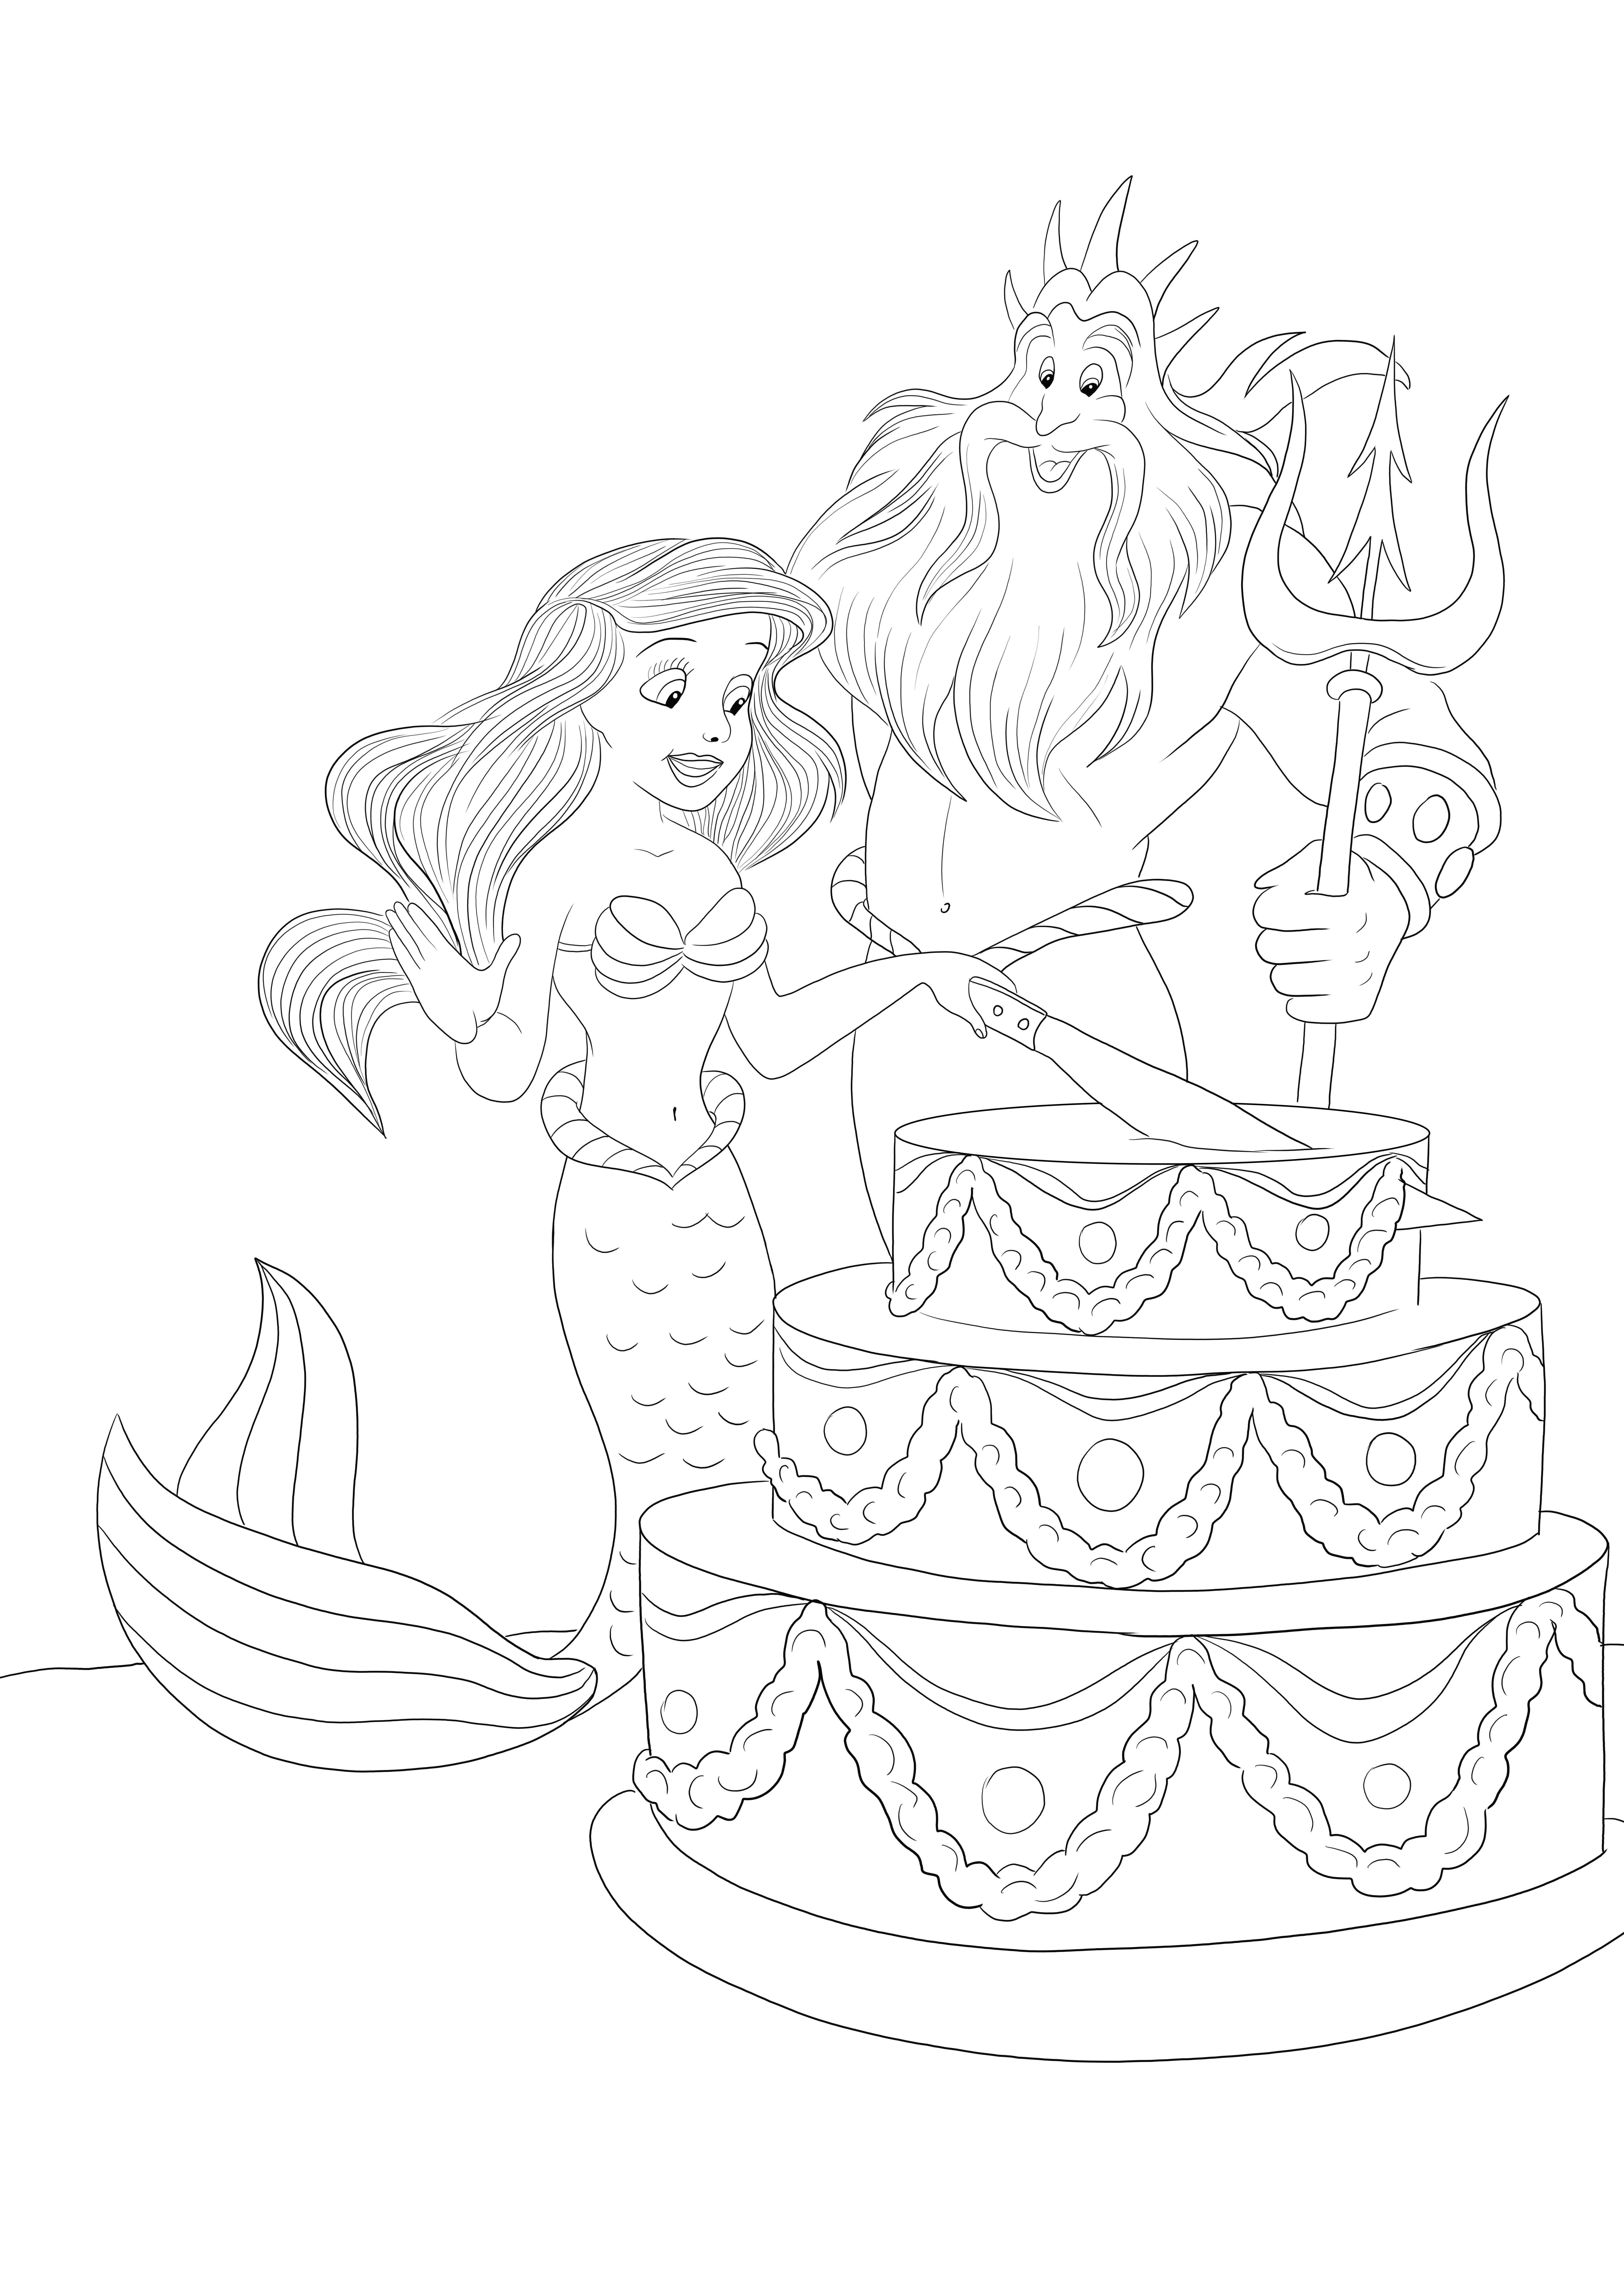 Pesta untuk halaman mewarnai Ariel untuk pencetakan dan pewarnaan gratis